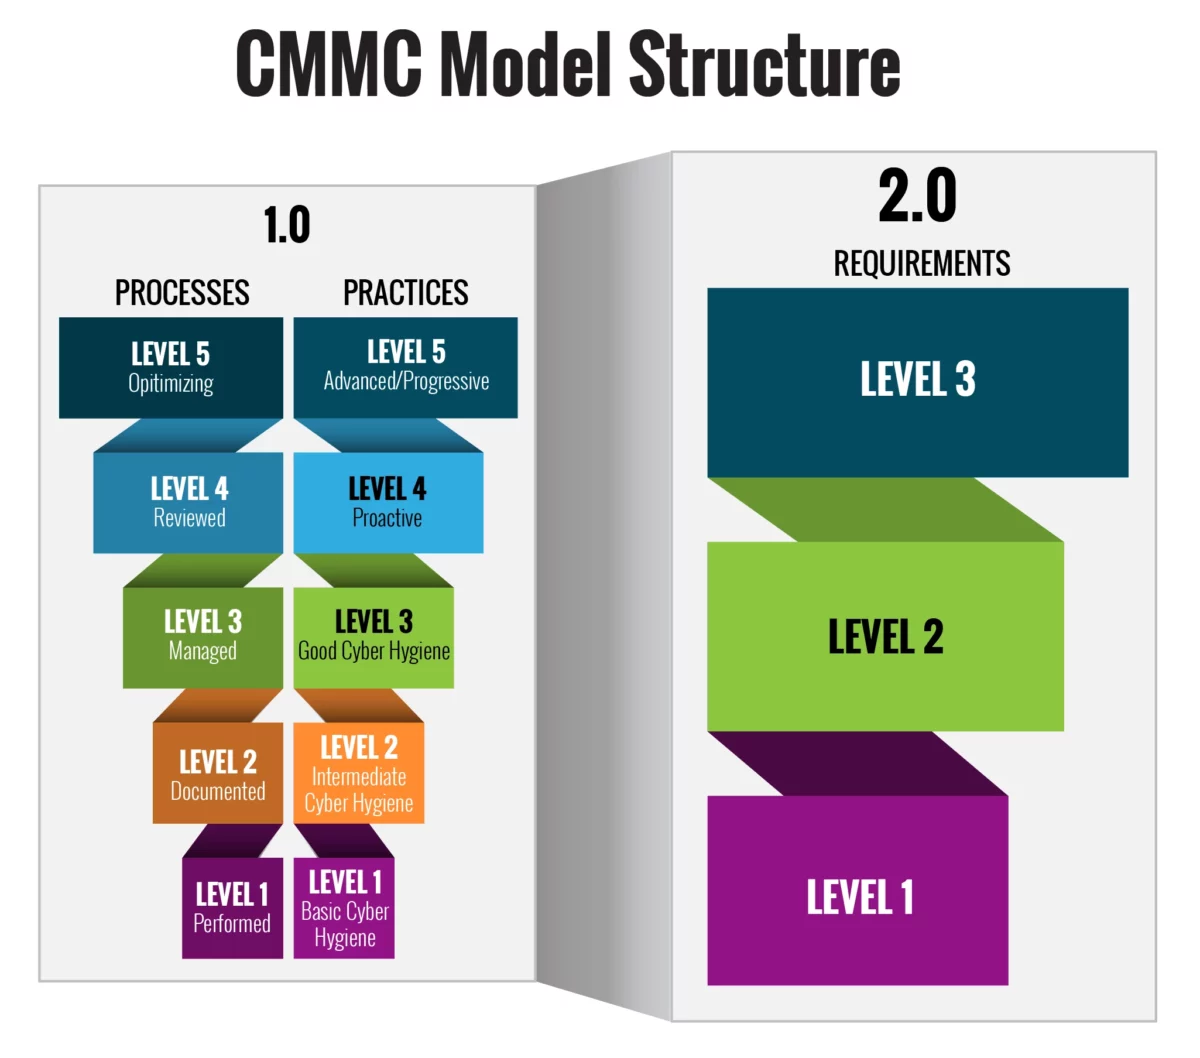 CMMC Model Structure